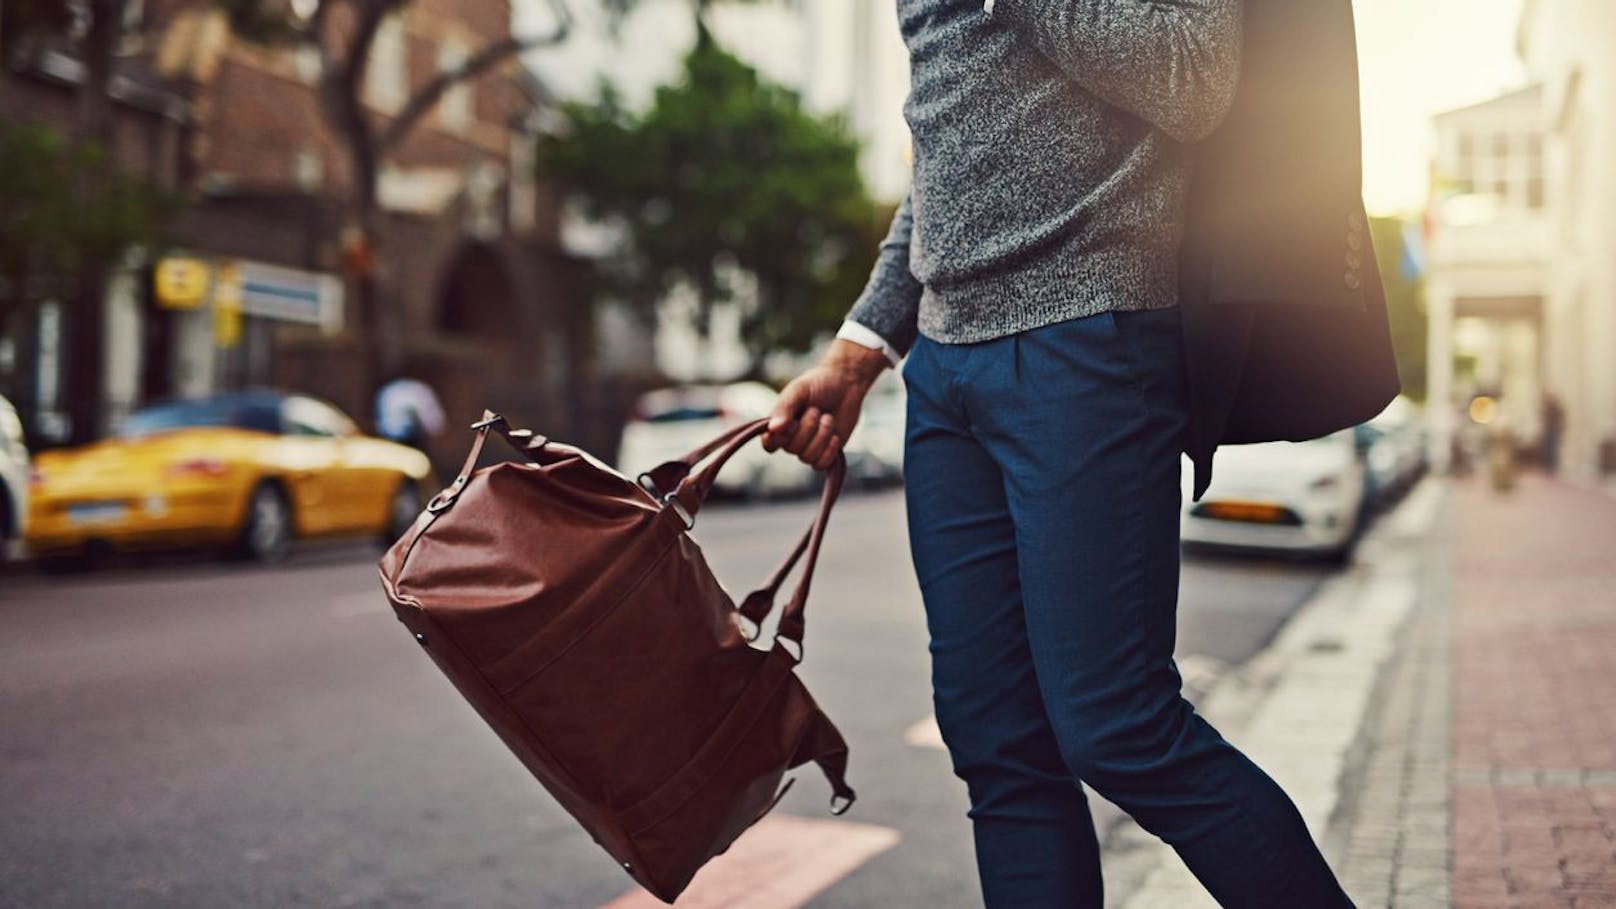 Handtaschen sind Accessoires, die man typischerweise an der Frau zu sehen bekommt. Geschlechterrollen sind aber nicht mehr das, was sie einst waren. Nun steht es auch Männern frei modische Crossbags, Shopper & Co nach Lust und Laune zu tragen. 